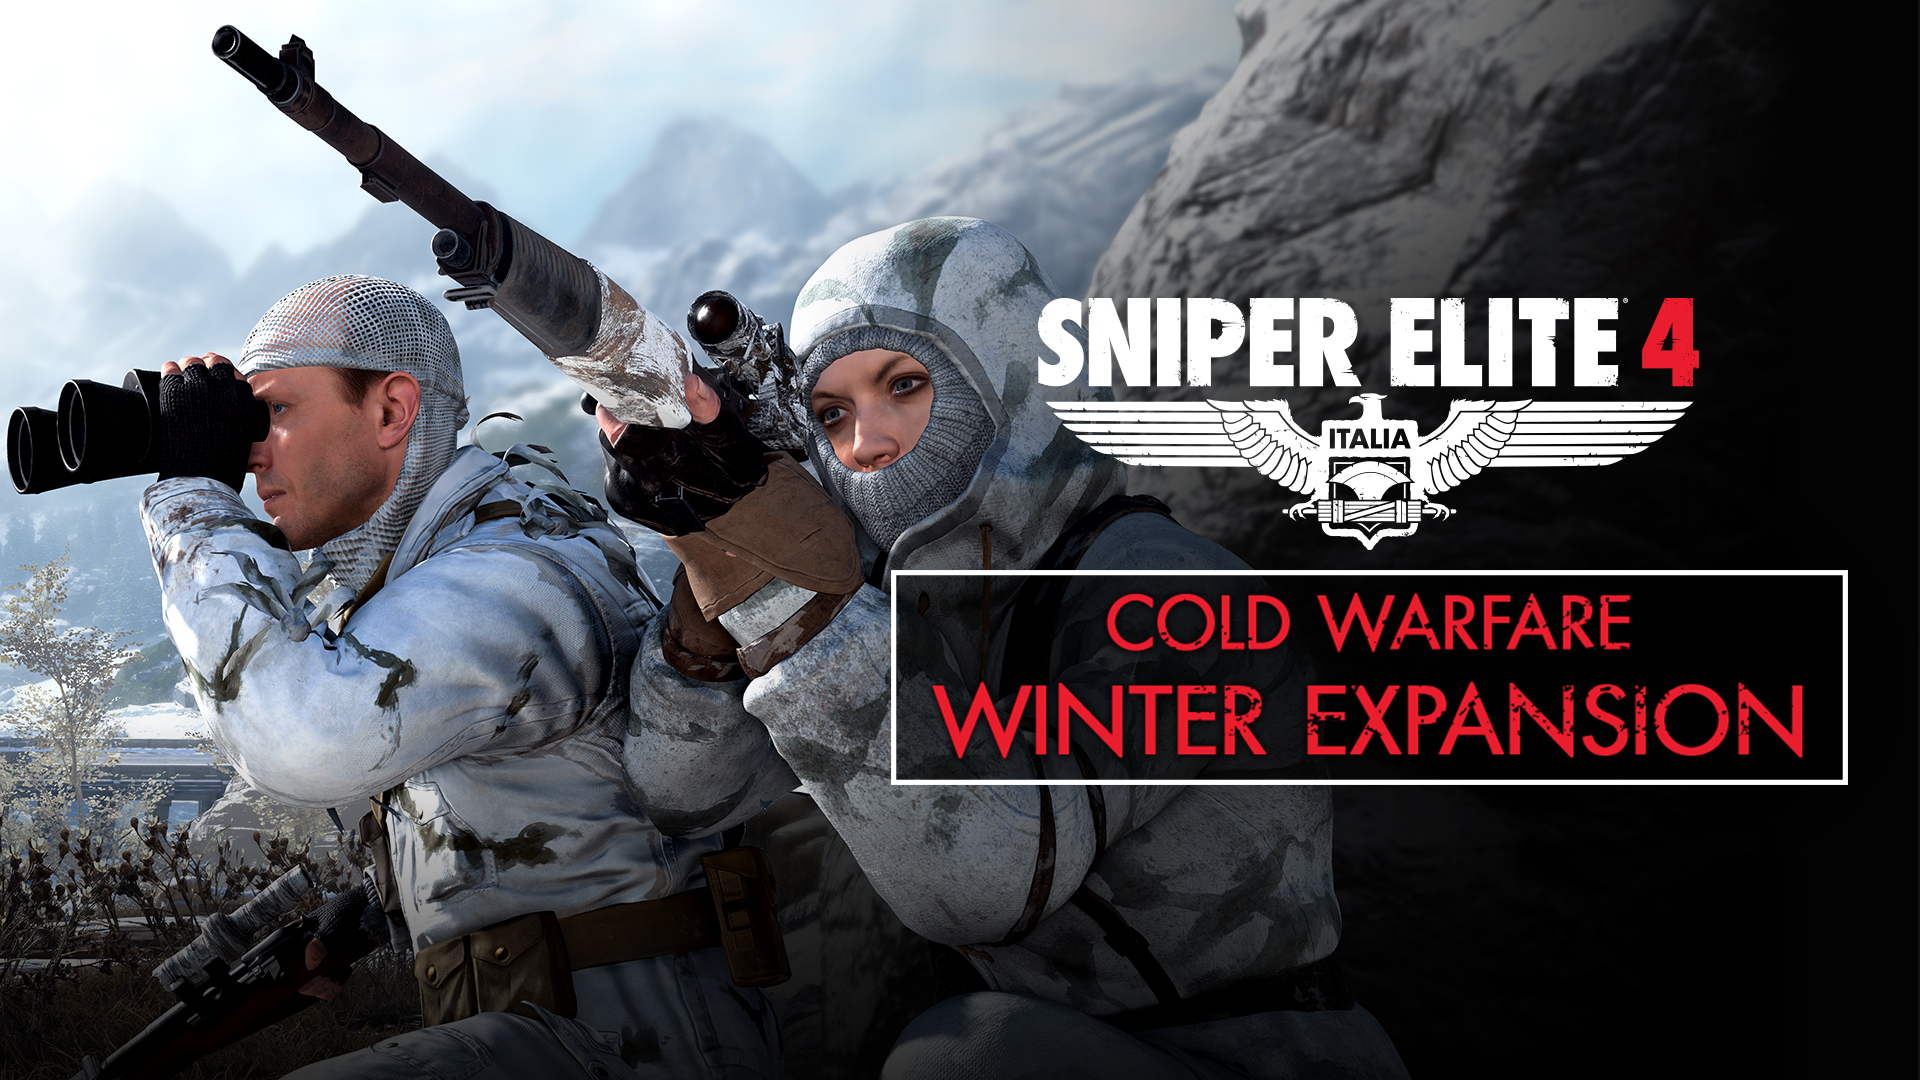 buy sniper elite 4 deluxe edition